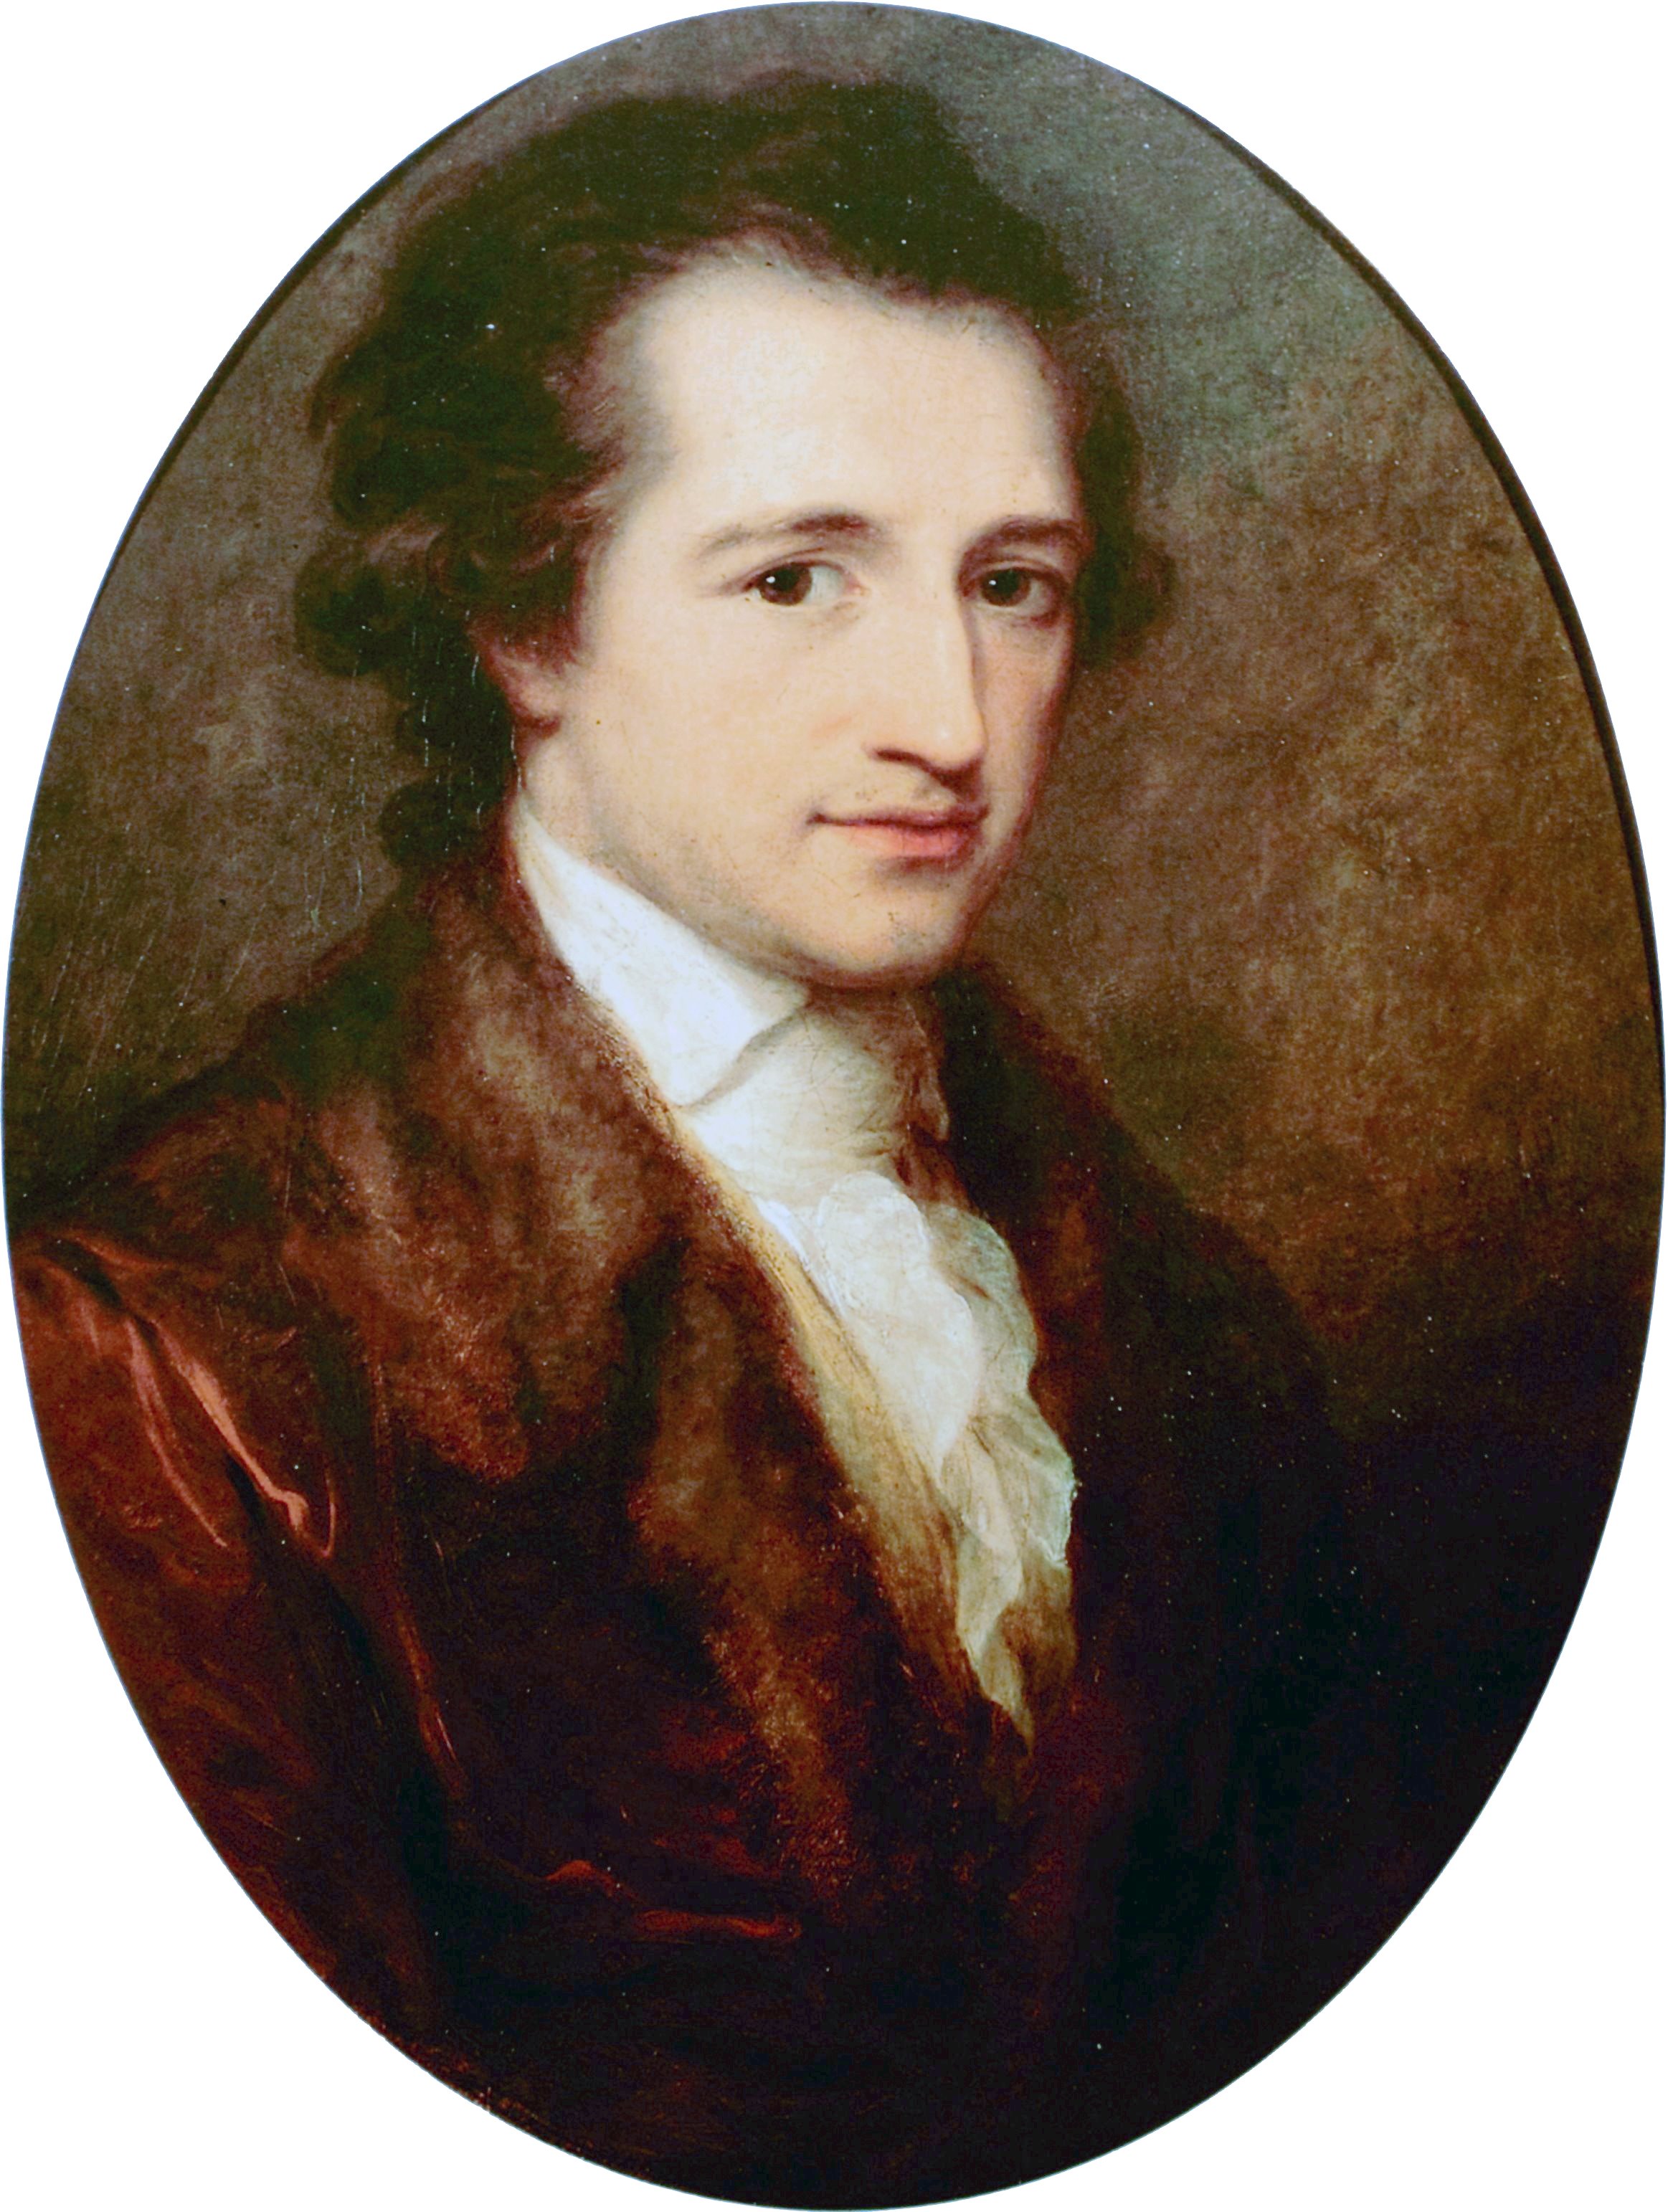 Der junge Goethe, gemalt von Angelica Kauffmann 1787.JPG